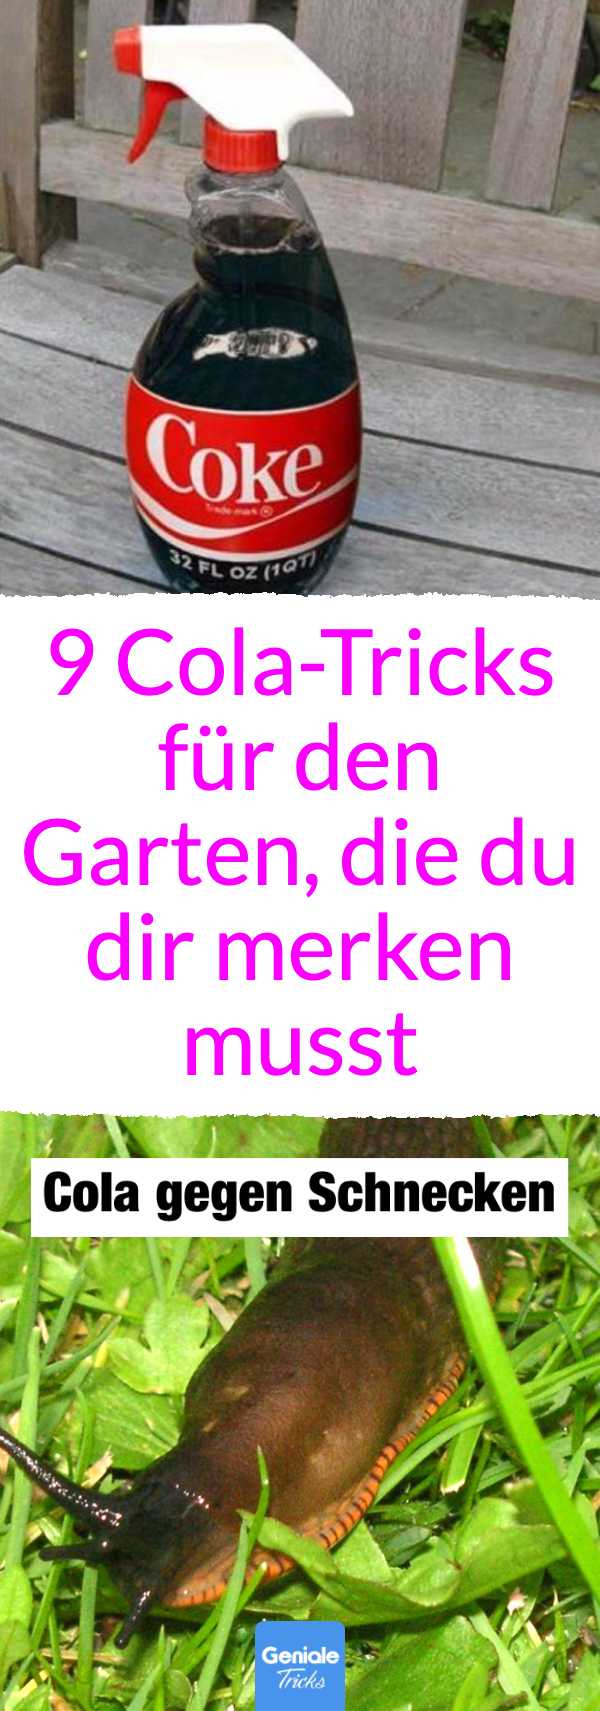 9 Cola-Hacks für den Garten, die du dir merken musst